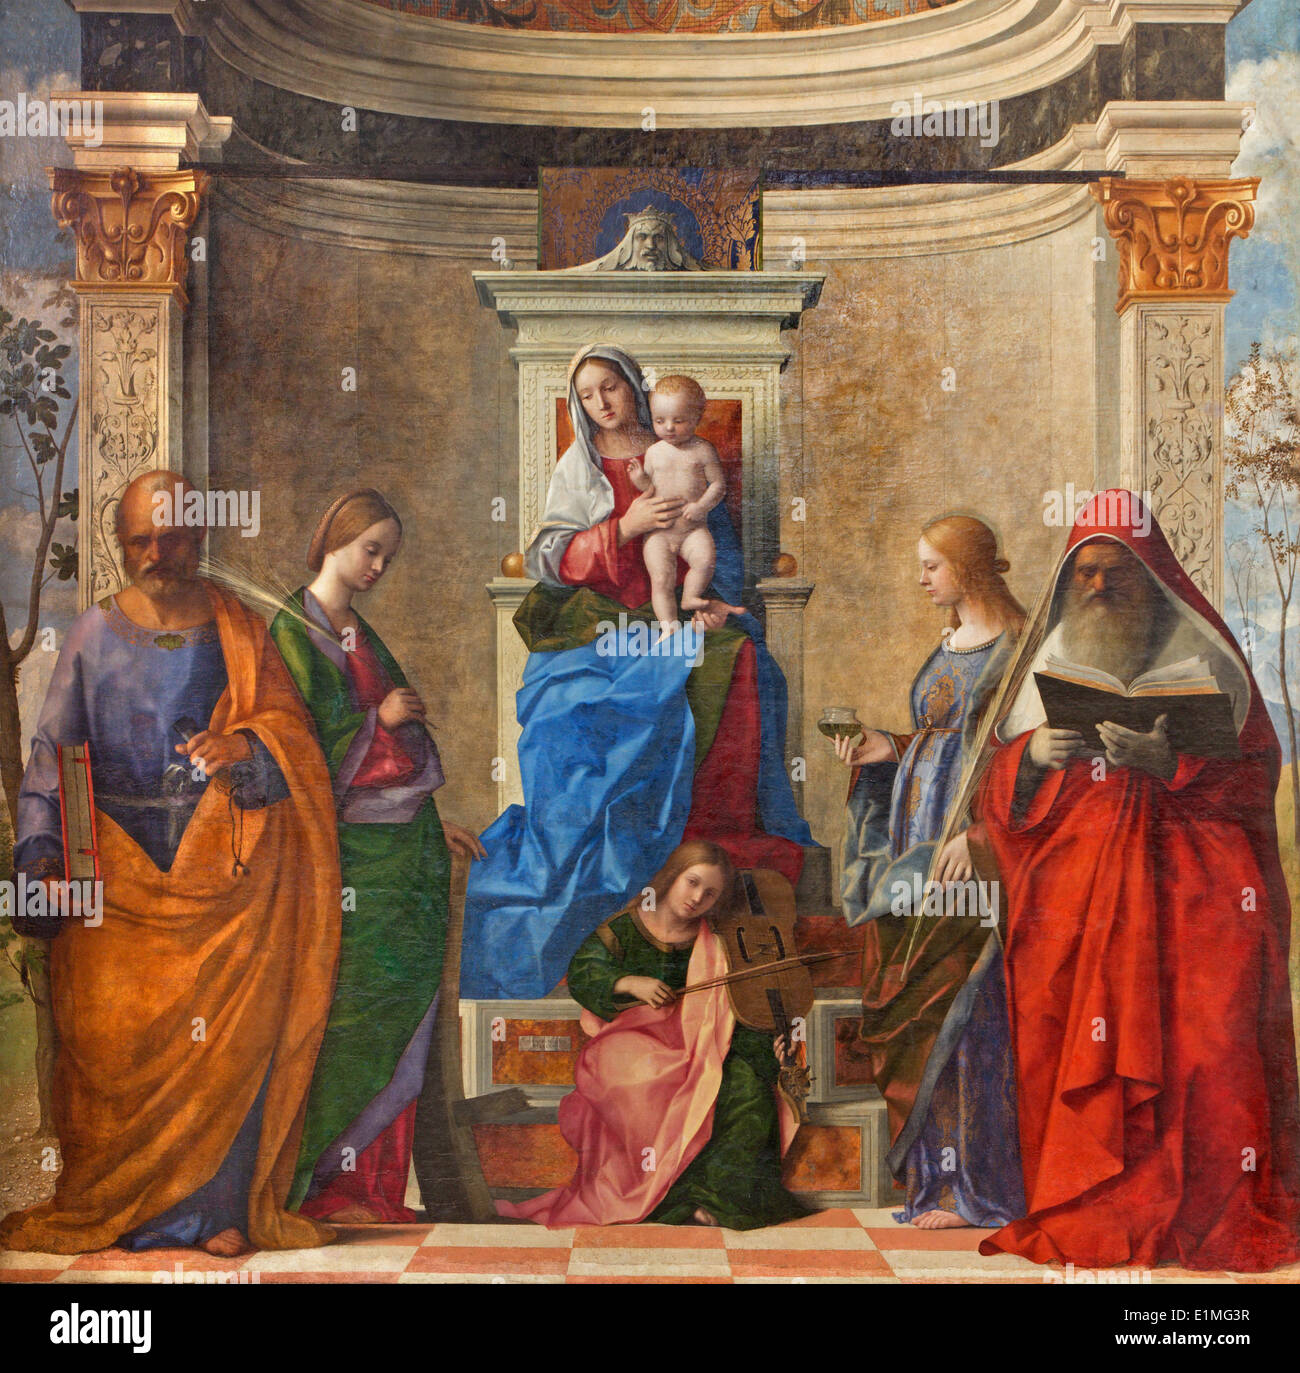 VENICE, ITALY - MARCH 12, 2014: 'Sacra conversazione' by Giovanni Bellini (1505) from Chiesa di San Zaccaria church. Stock Photo